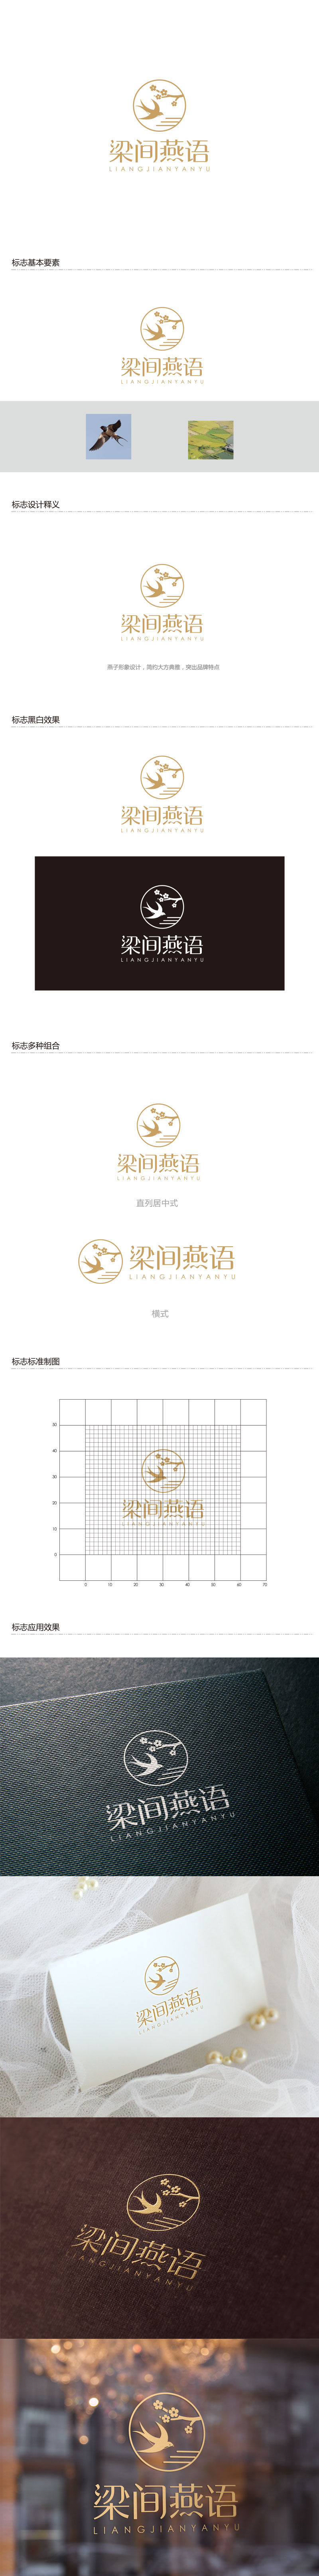 孙金泽的梁间燕语食品销售logo设计